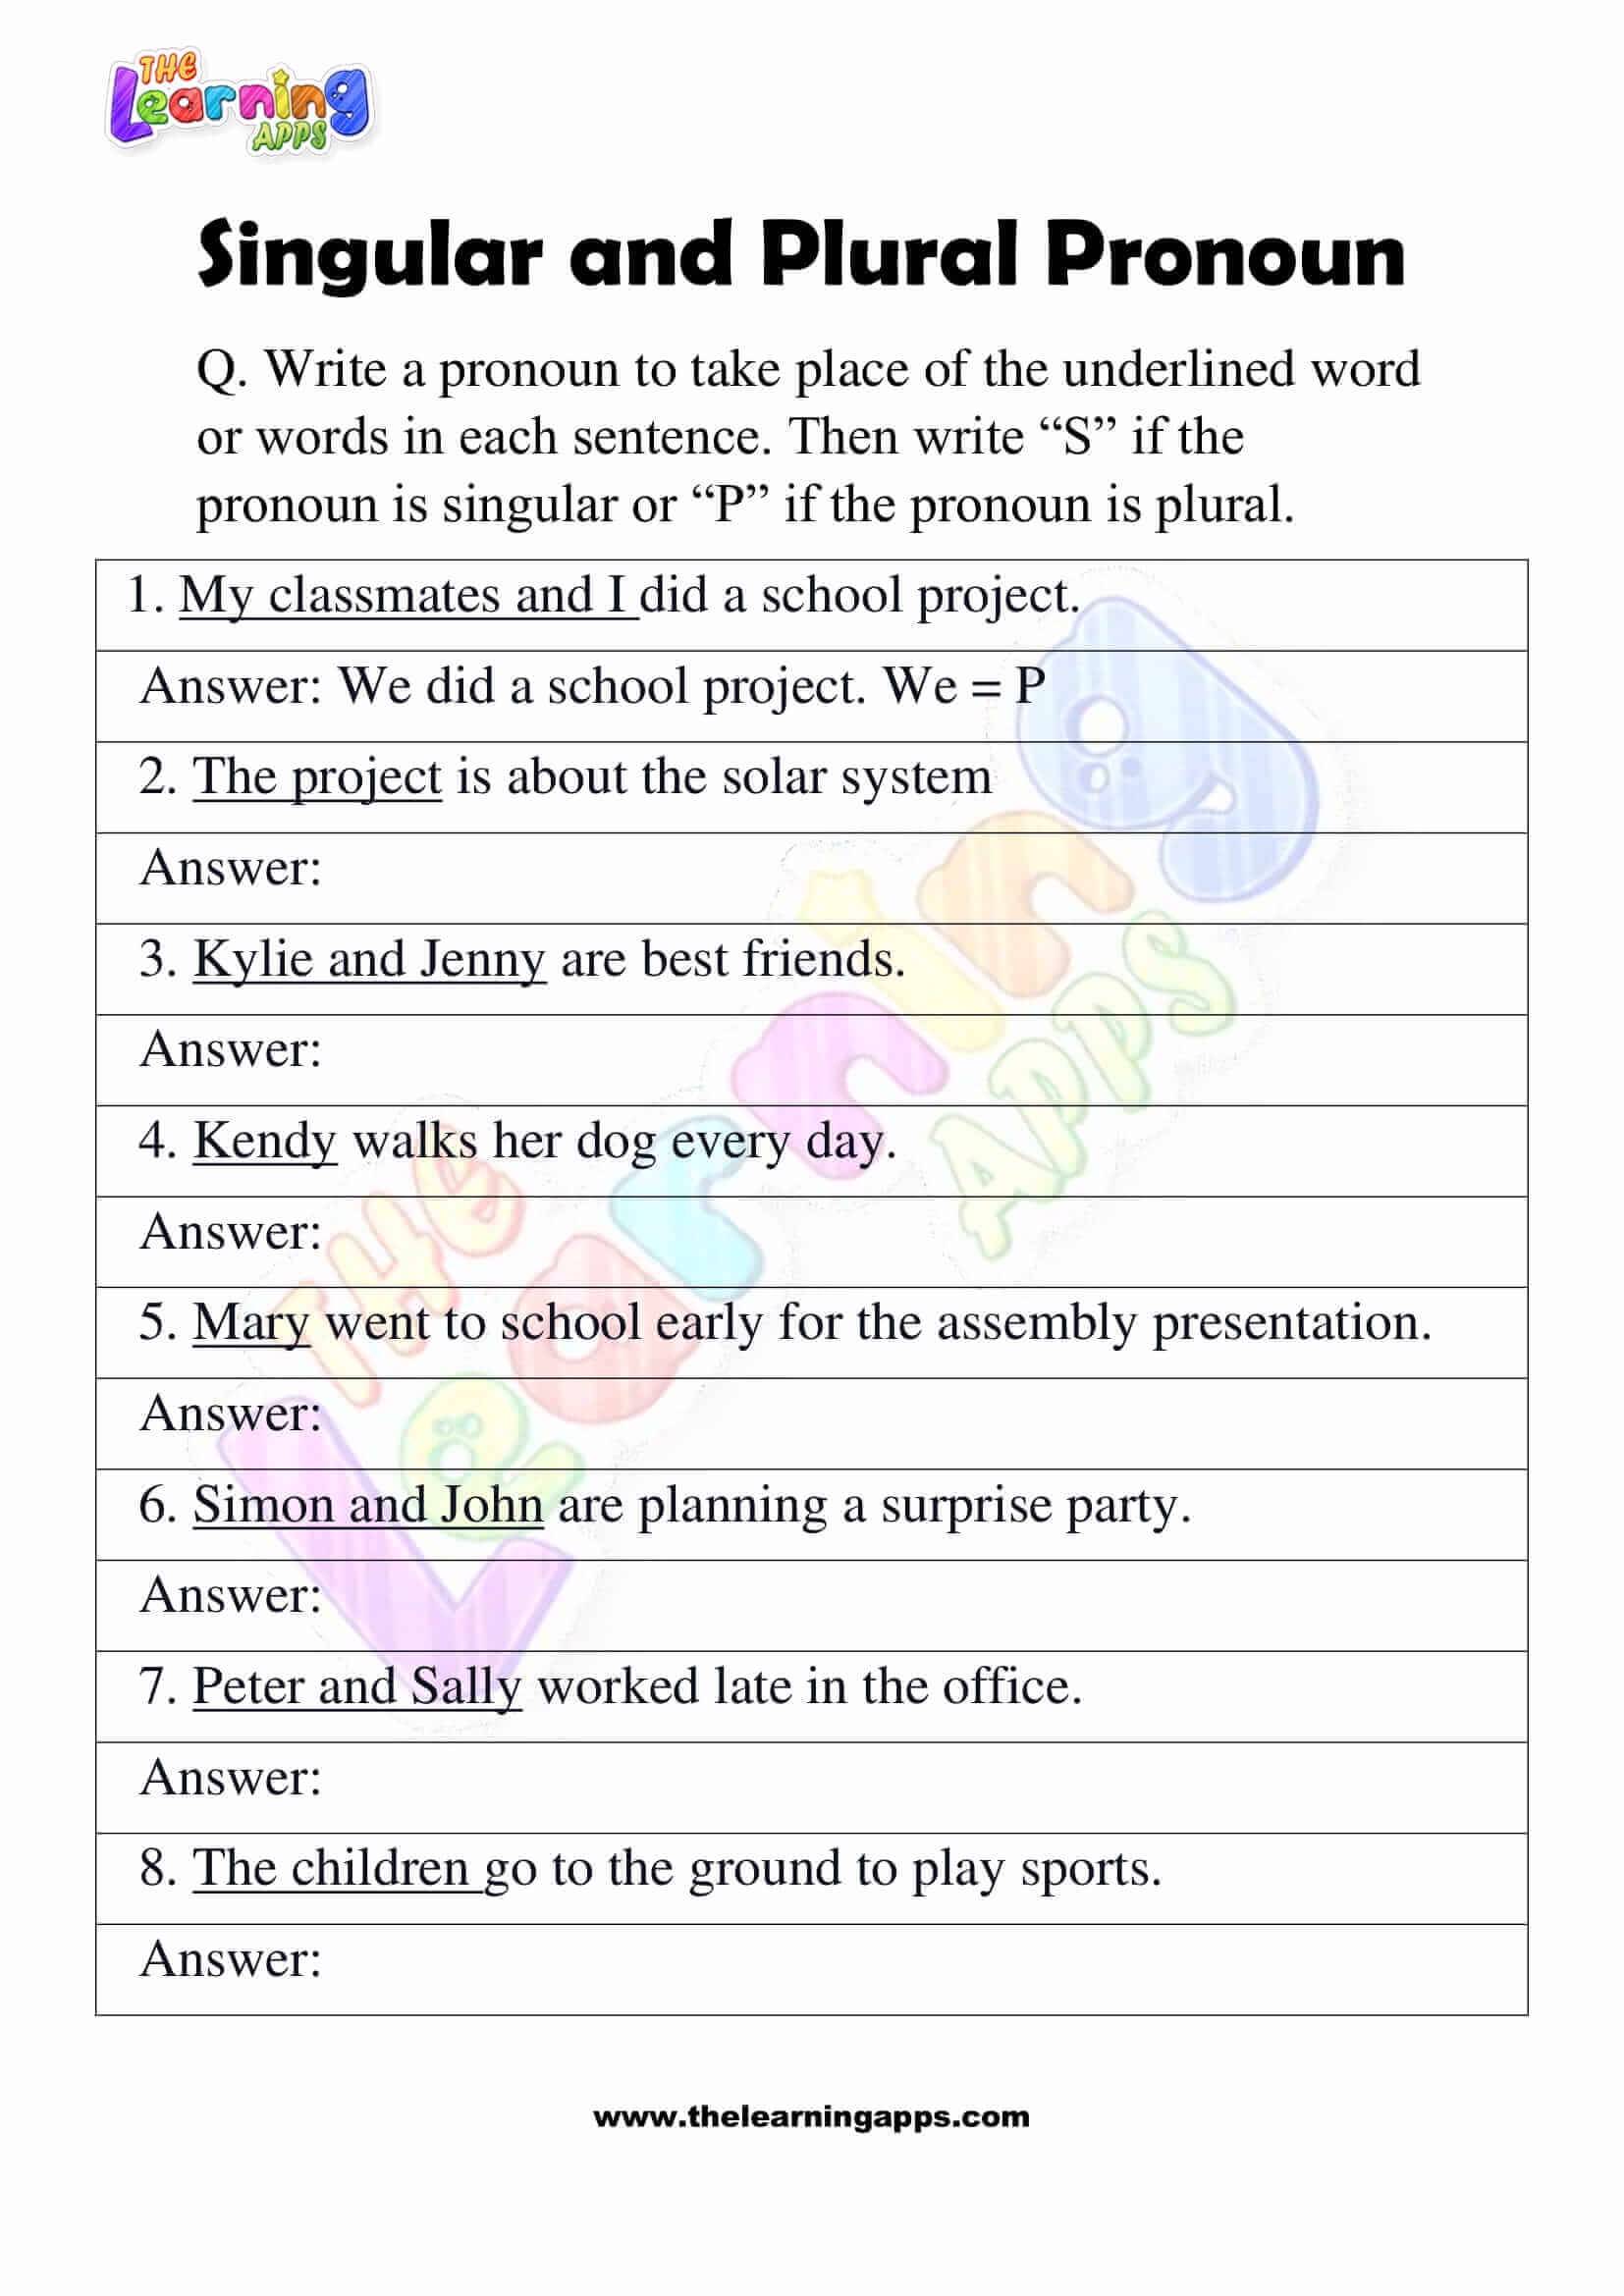 Singular-and-Plural-Pronoun-Worksheets-Grade-3-Activity-4